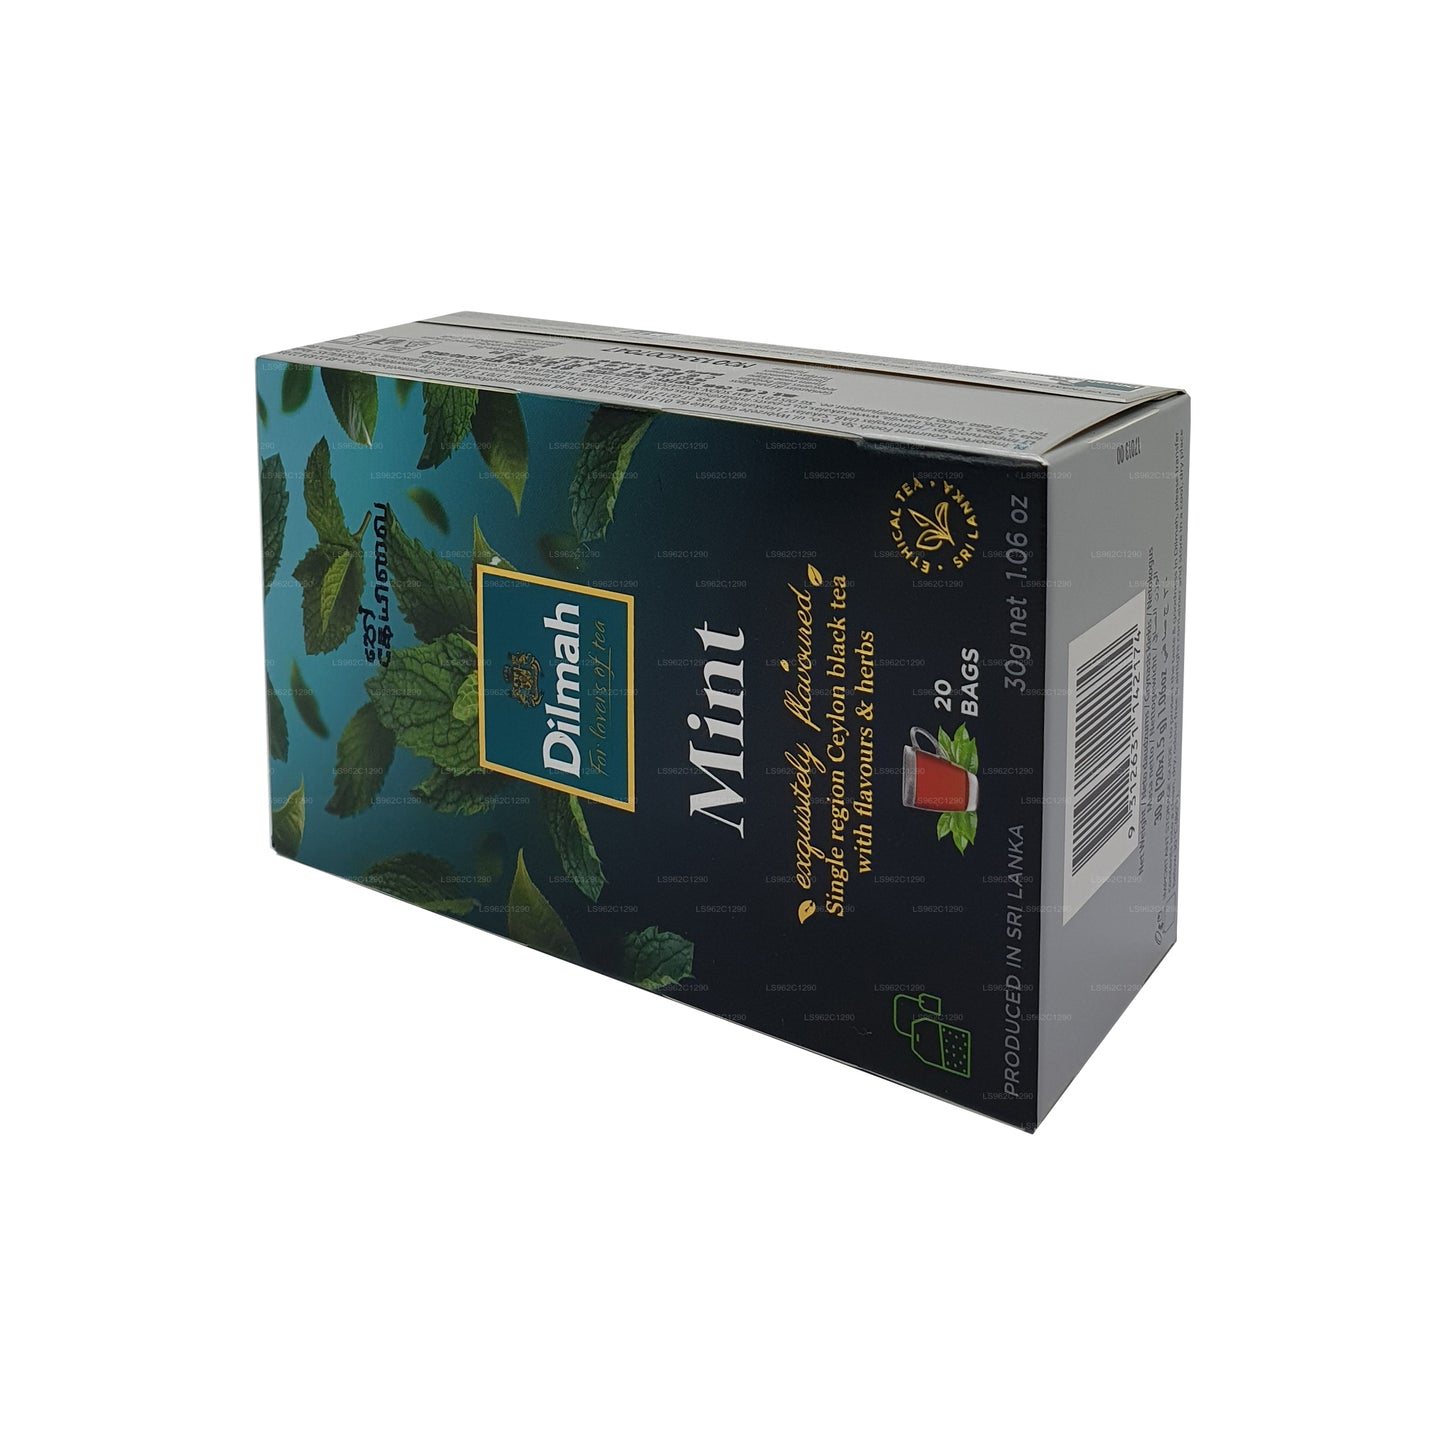 Dilmah Cejlońska Herbata czarna o smaku miętowym (30g)